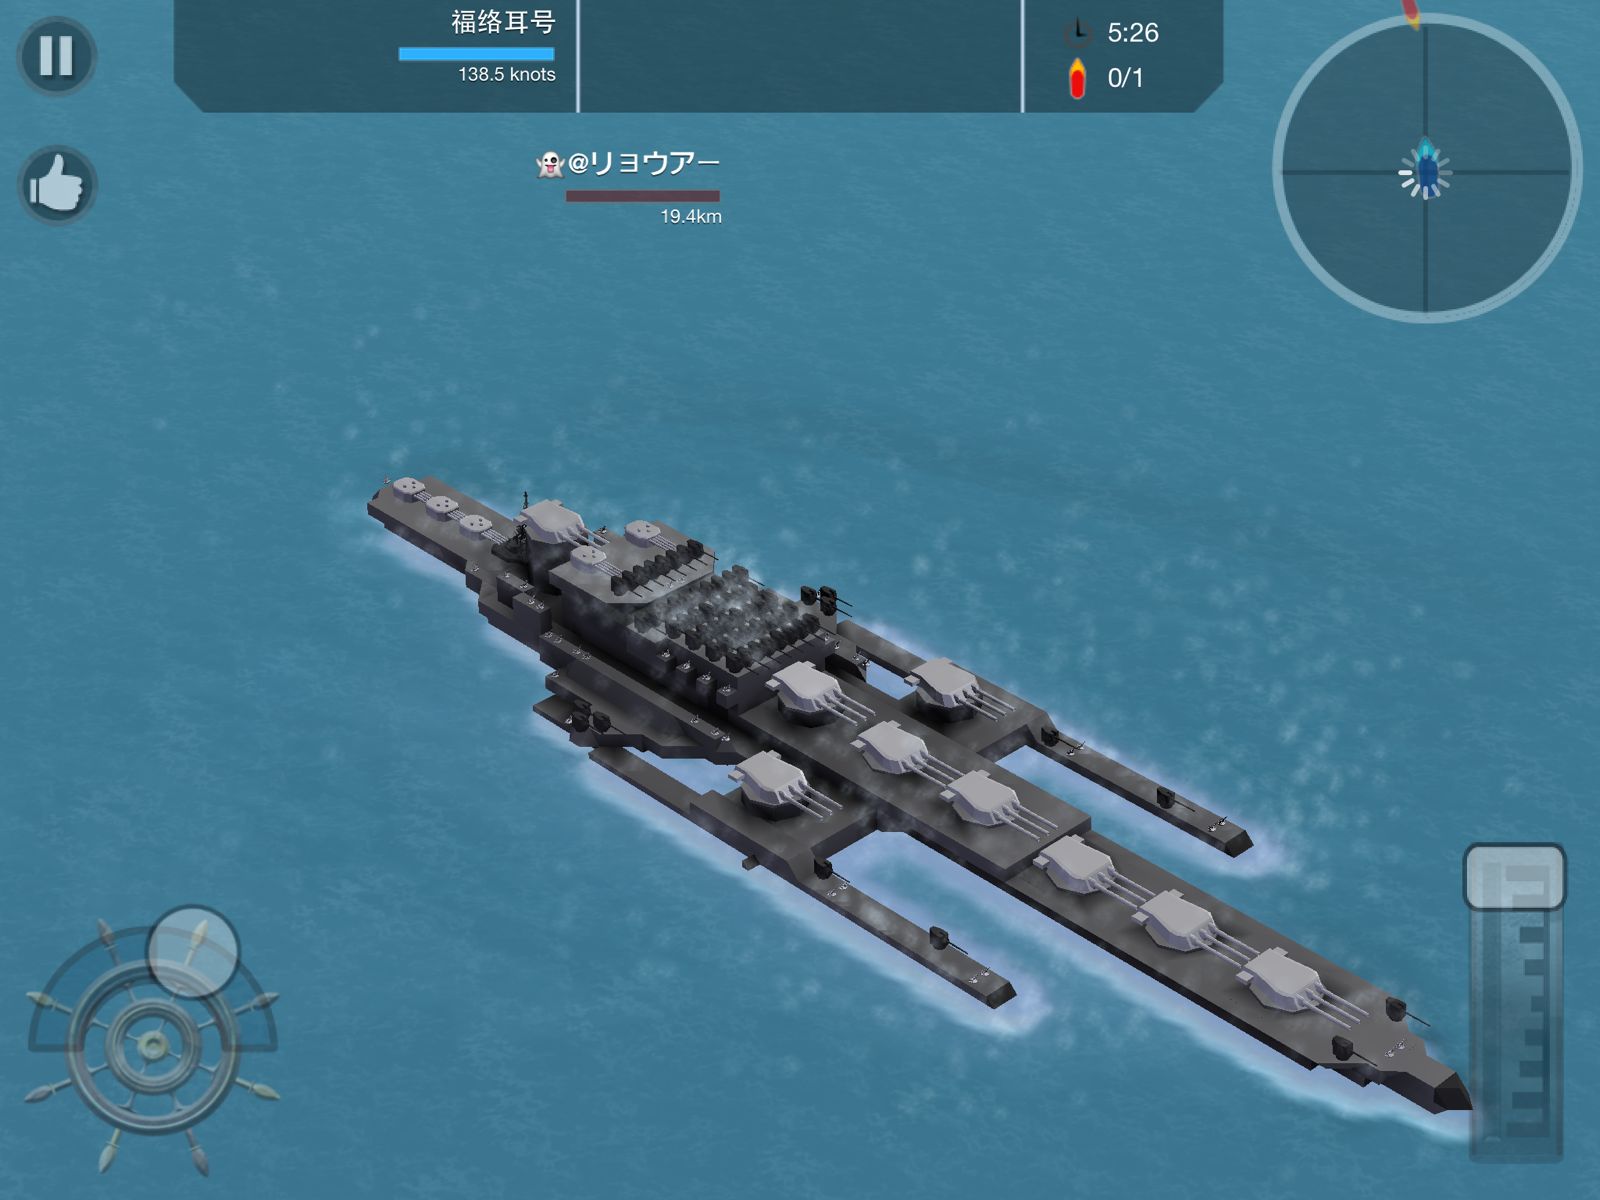 battleship craft codes